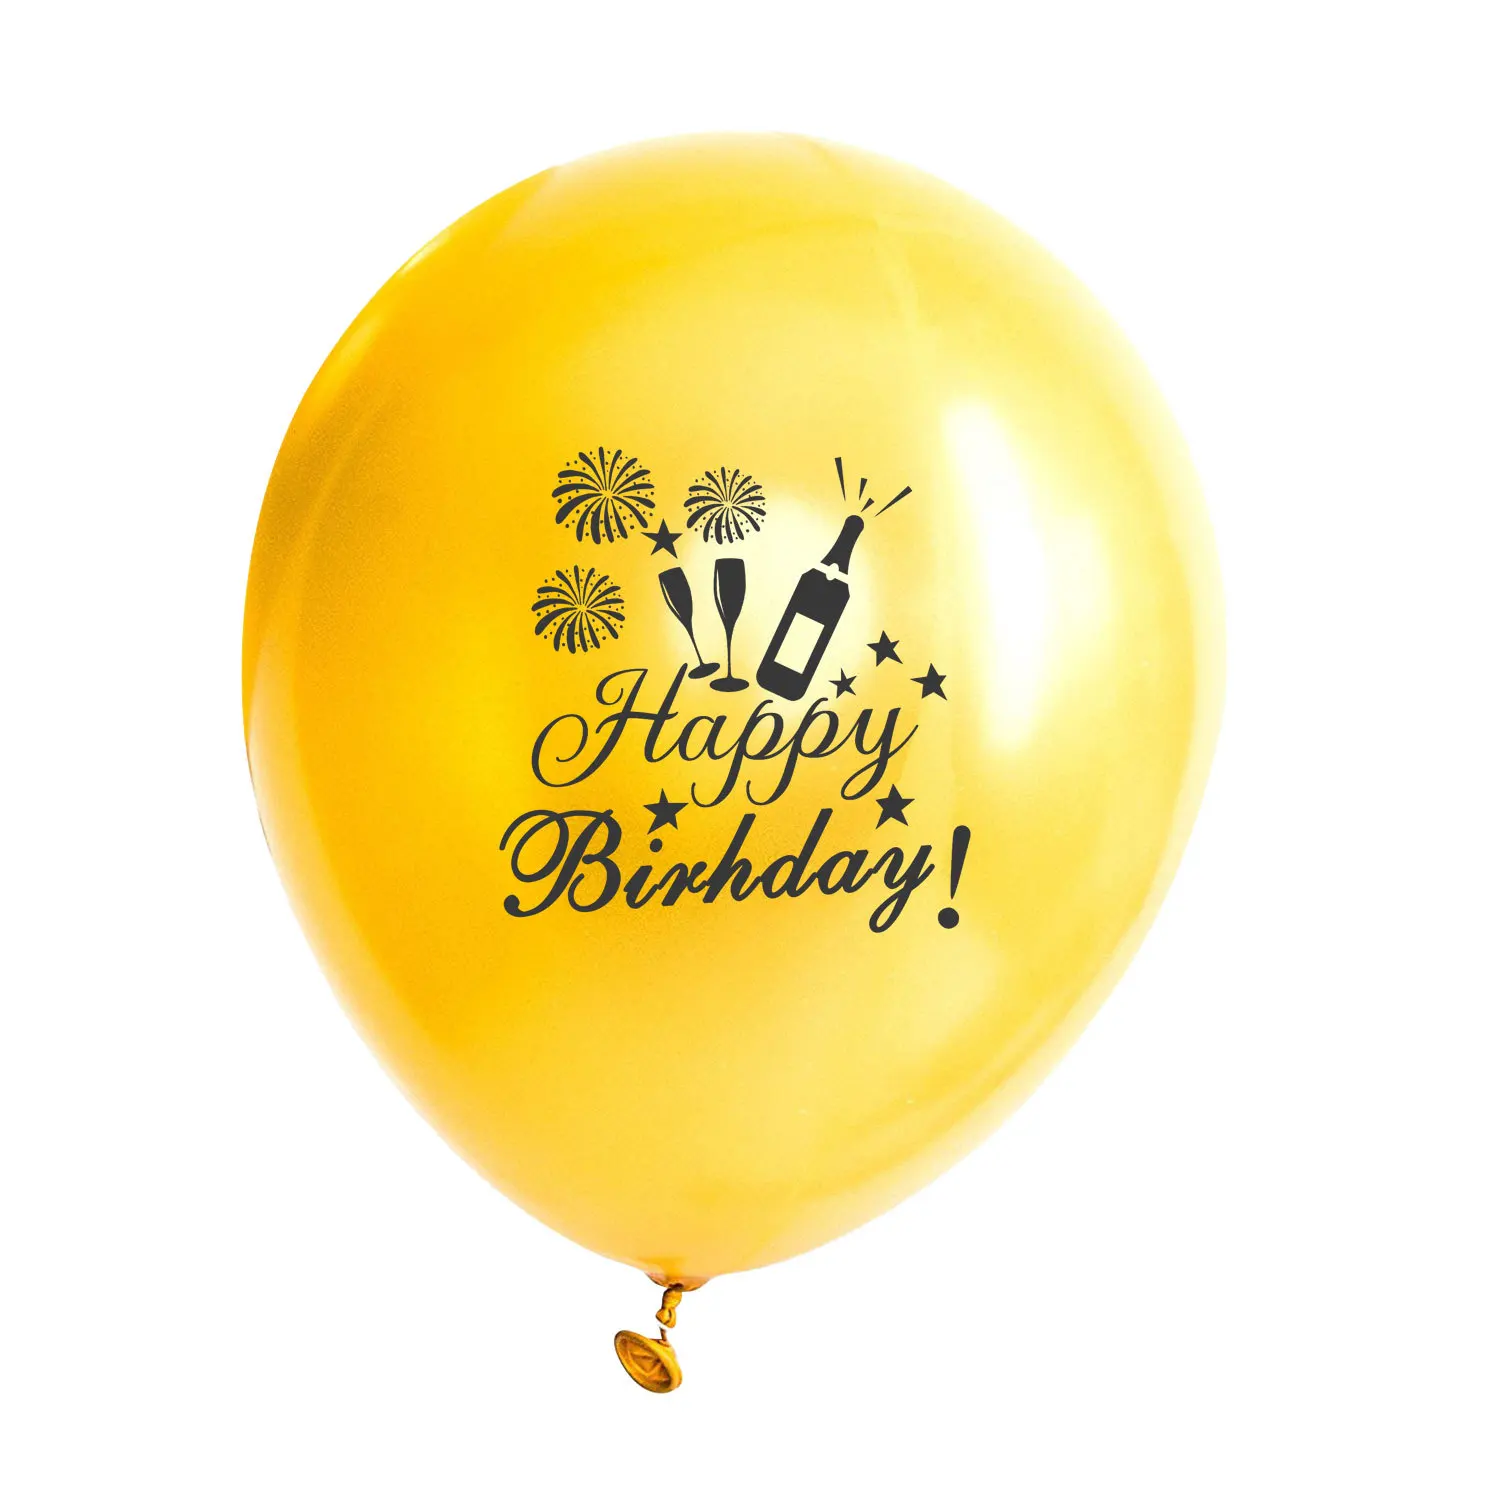 С днем рождения набор воздушных шаров микс Звезда фольга балон розовое золото конфетти шары из латекса бутылка шампанского с днем рождения украшения